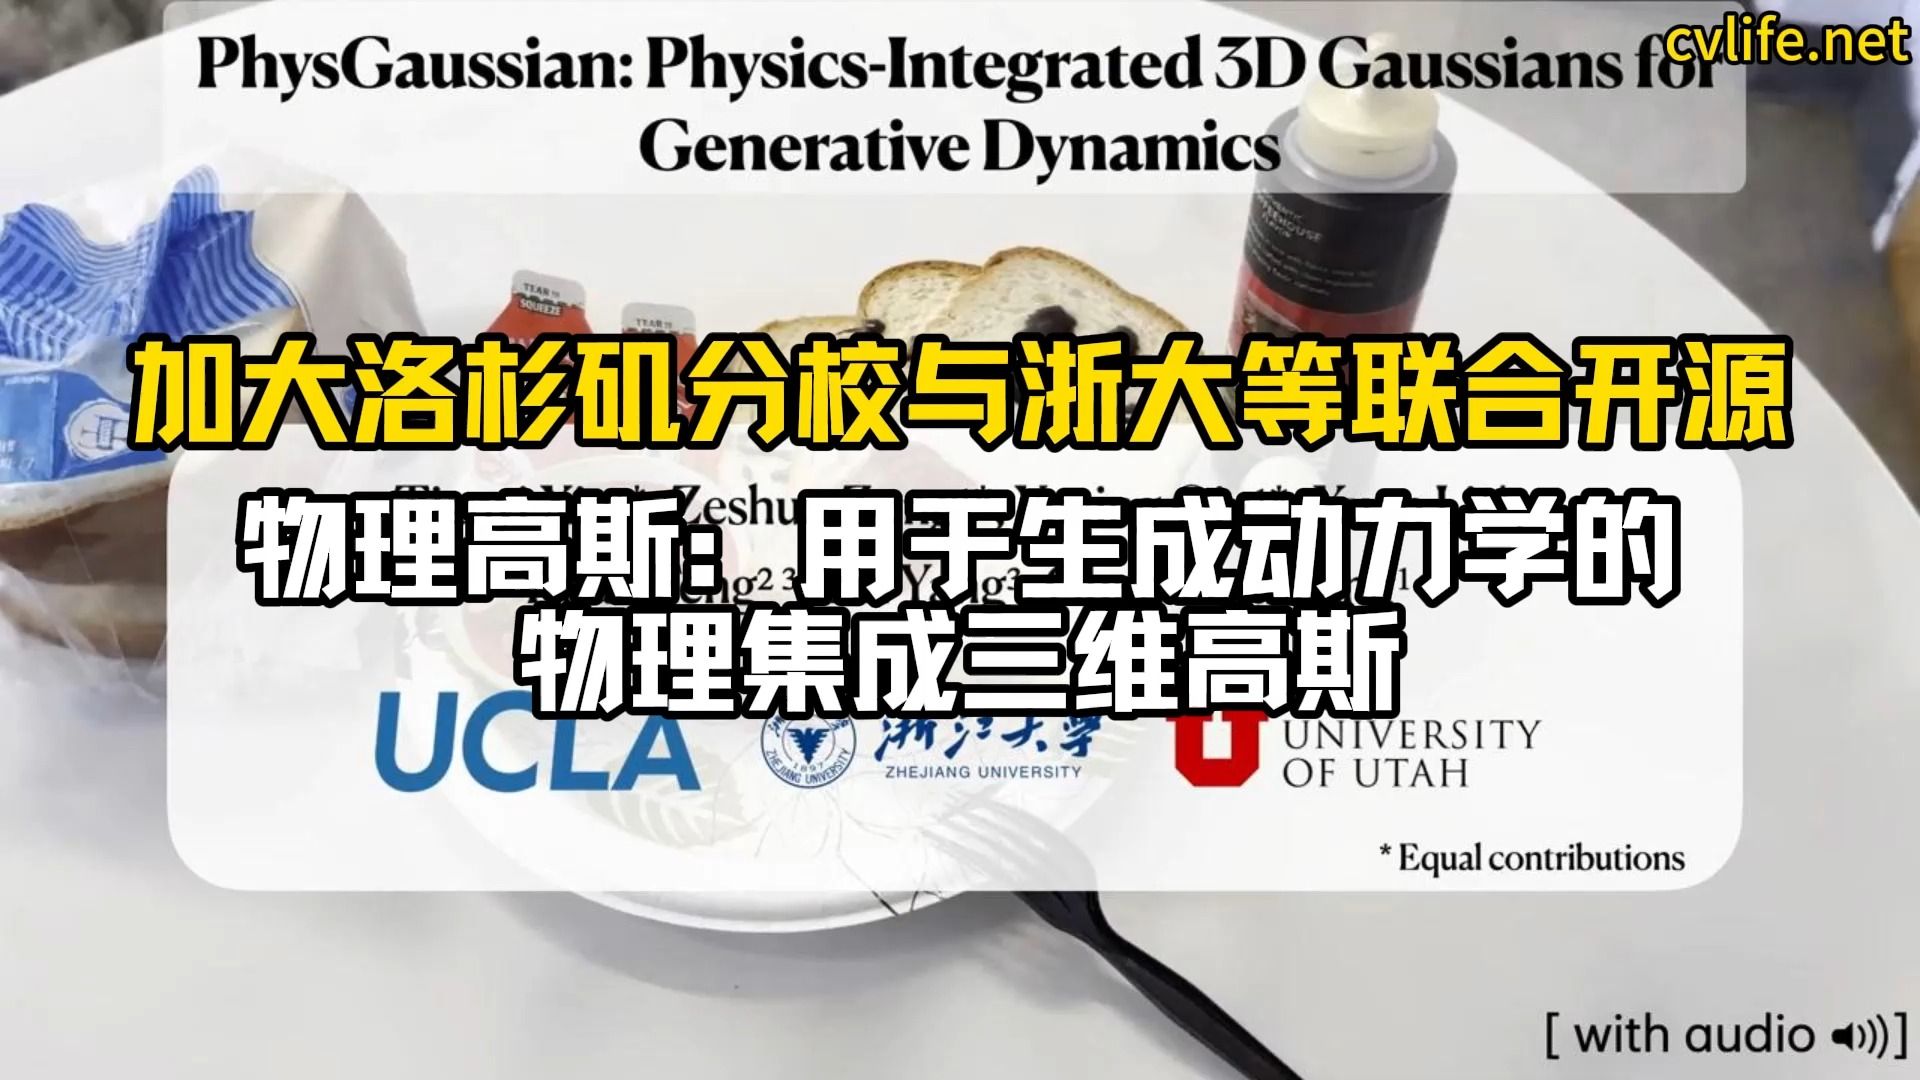 加大洛杉矶分校与浙大等联合开源”物理高斯：用于生成动力学的物理集成三维高斯”